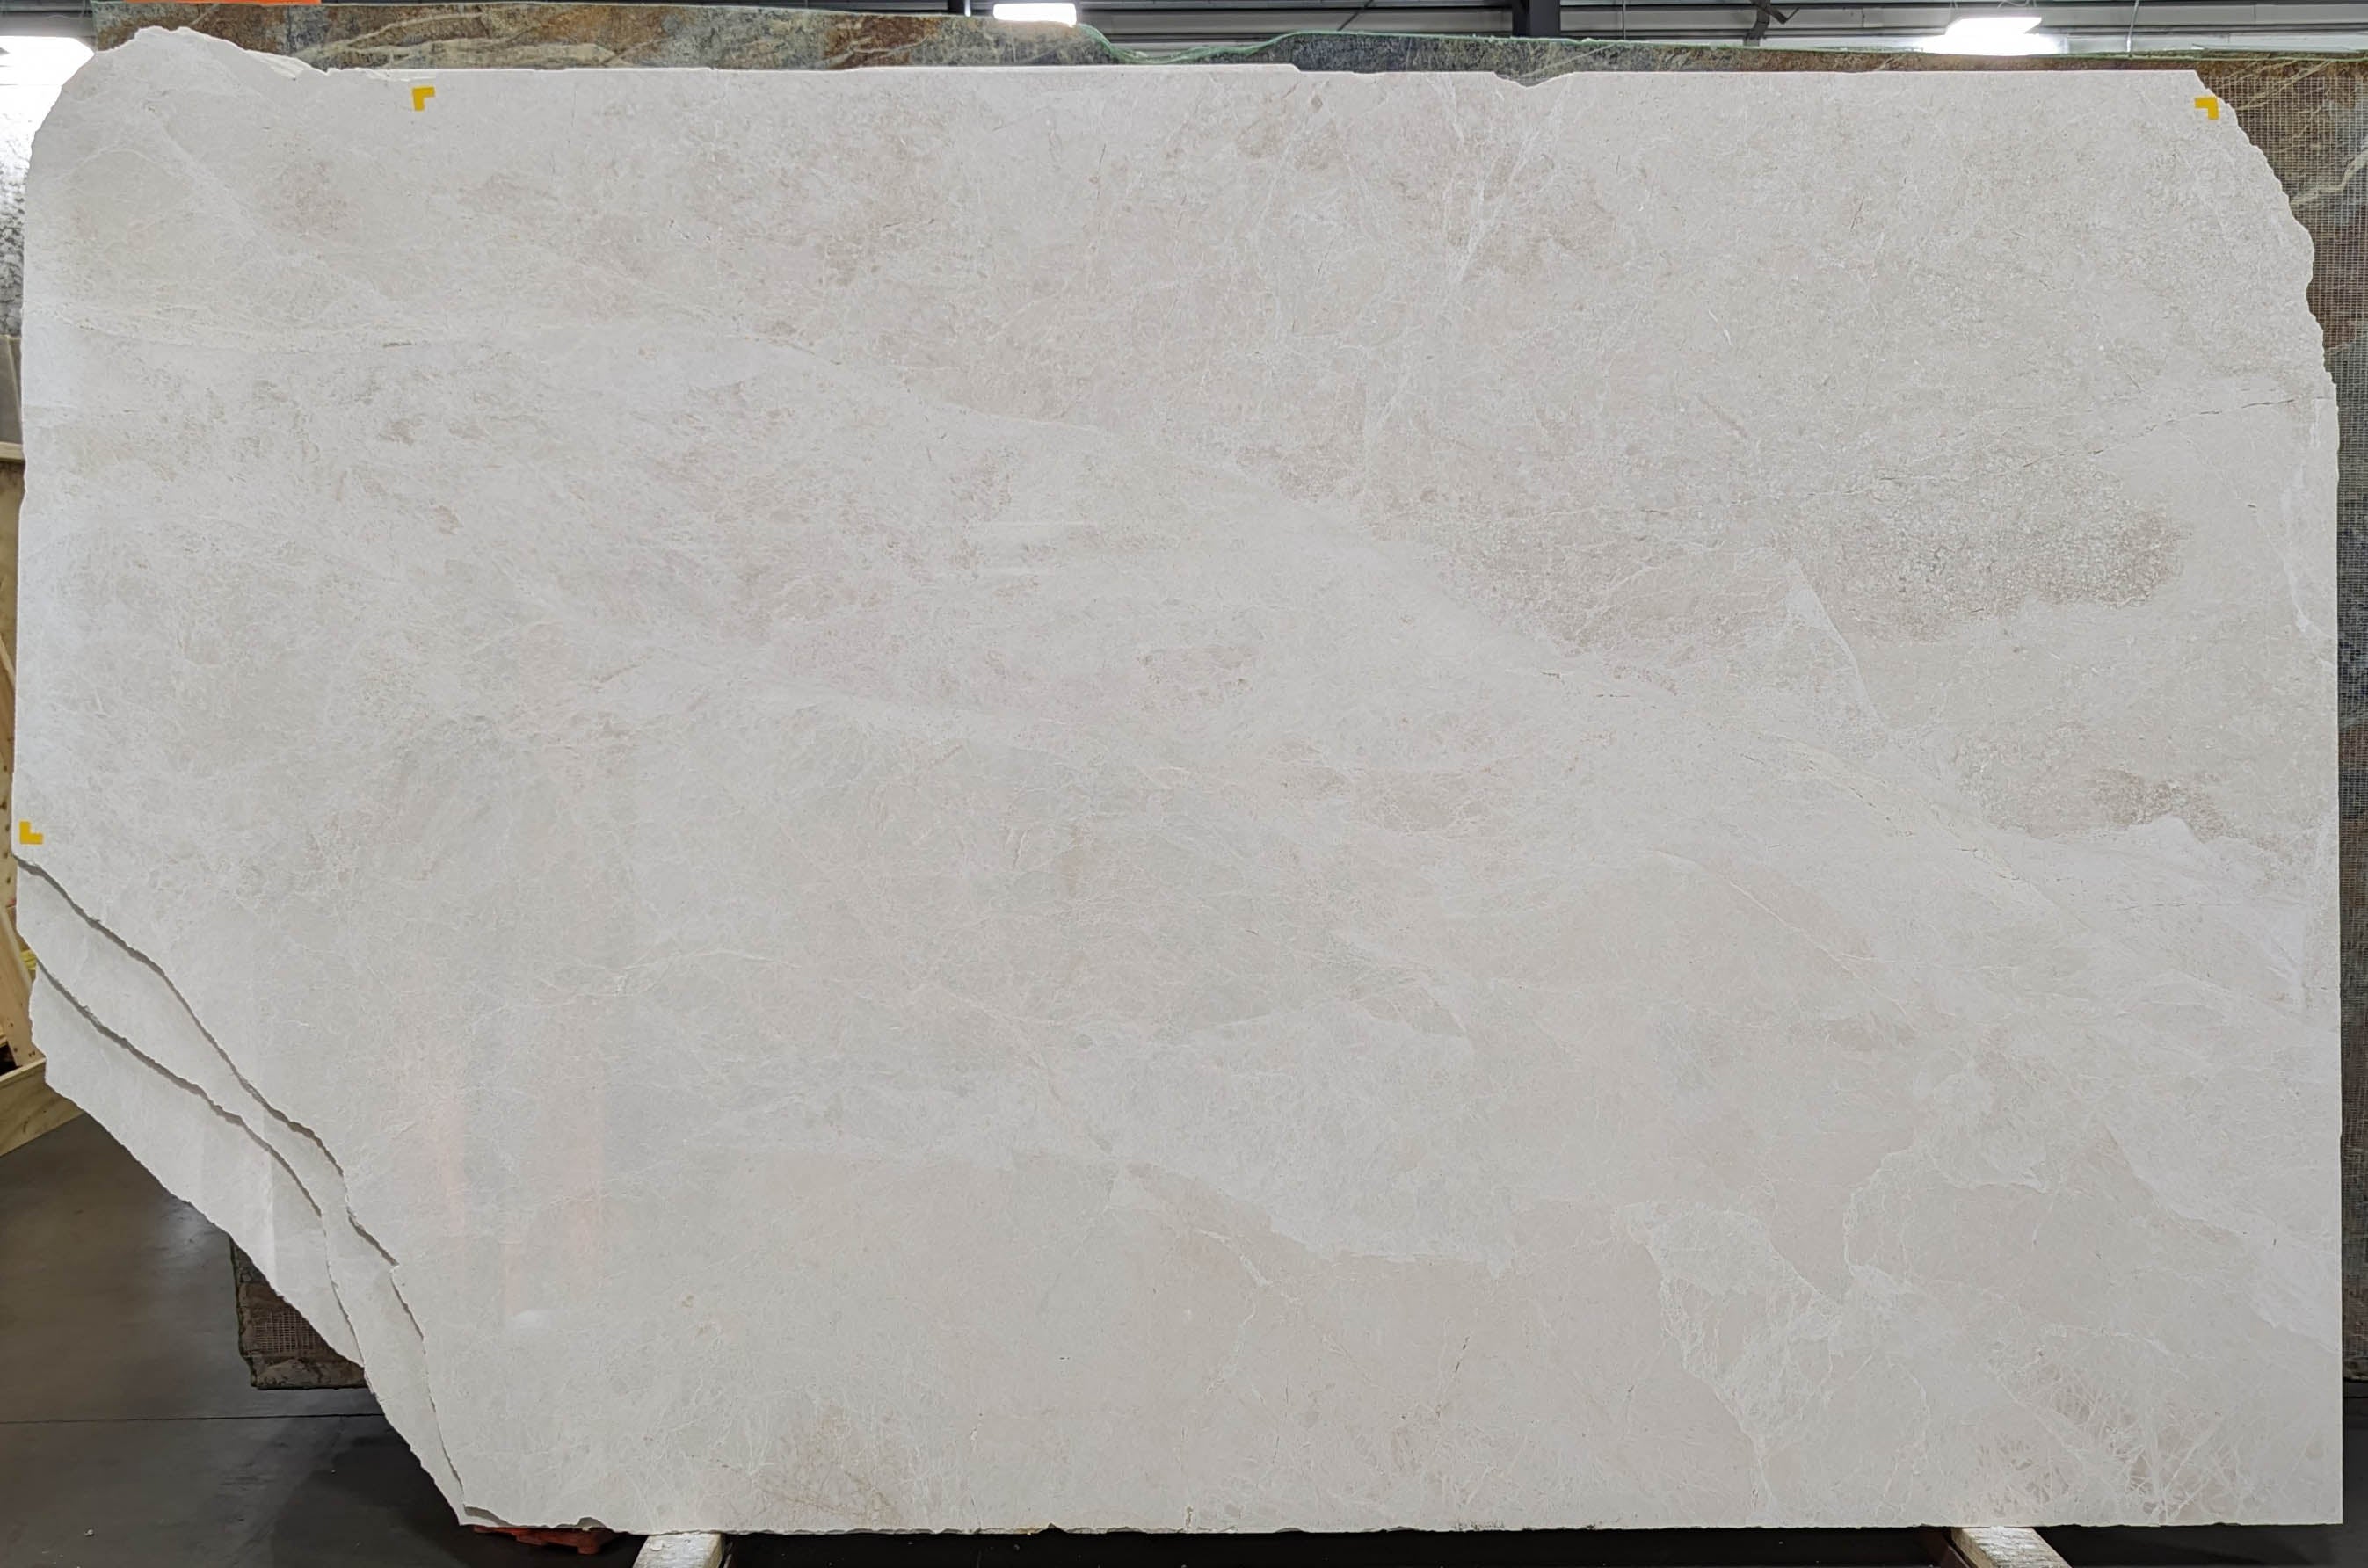  White Sand Marble Slab 3/4  Polished Stone - 54482#55 -  36X110 